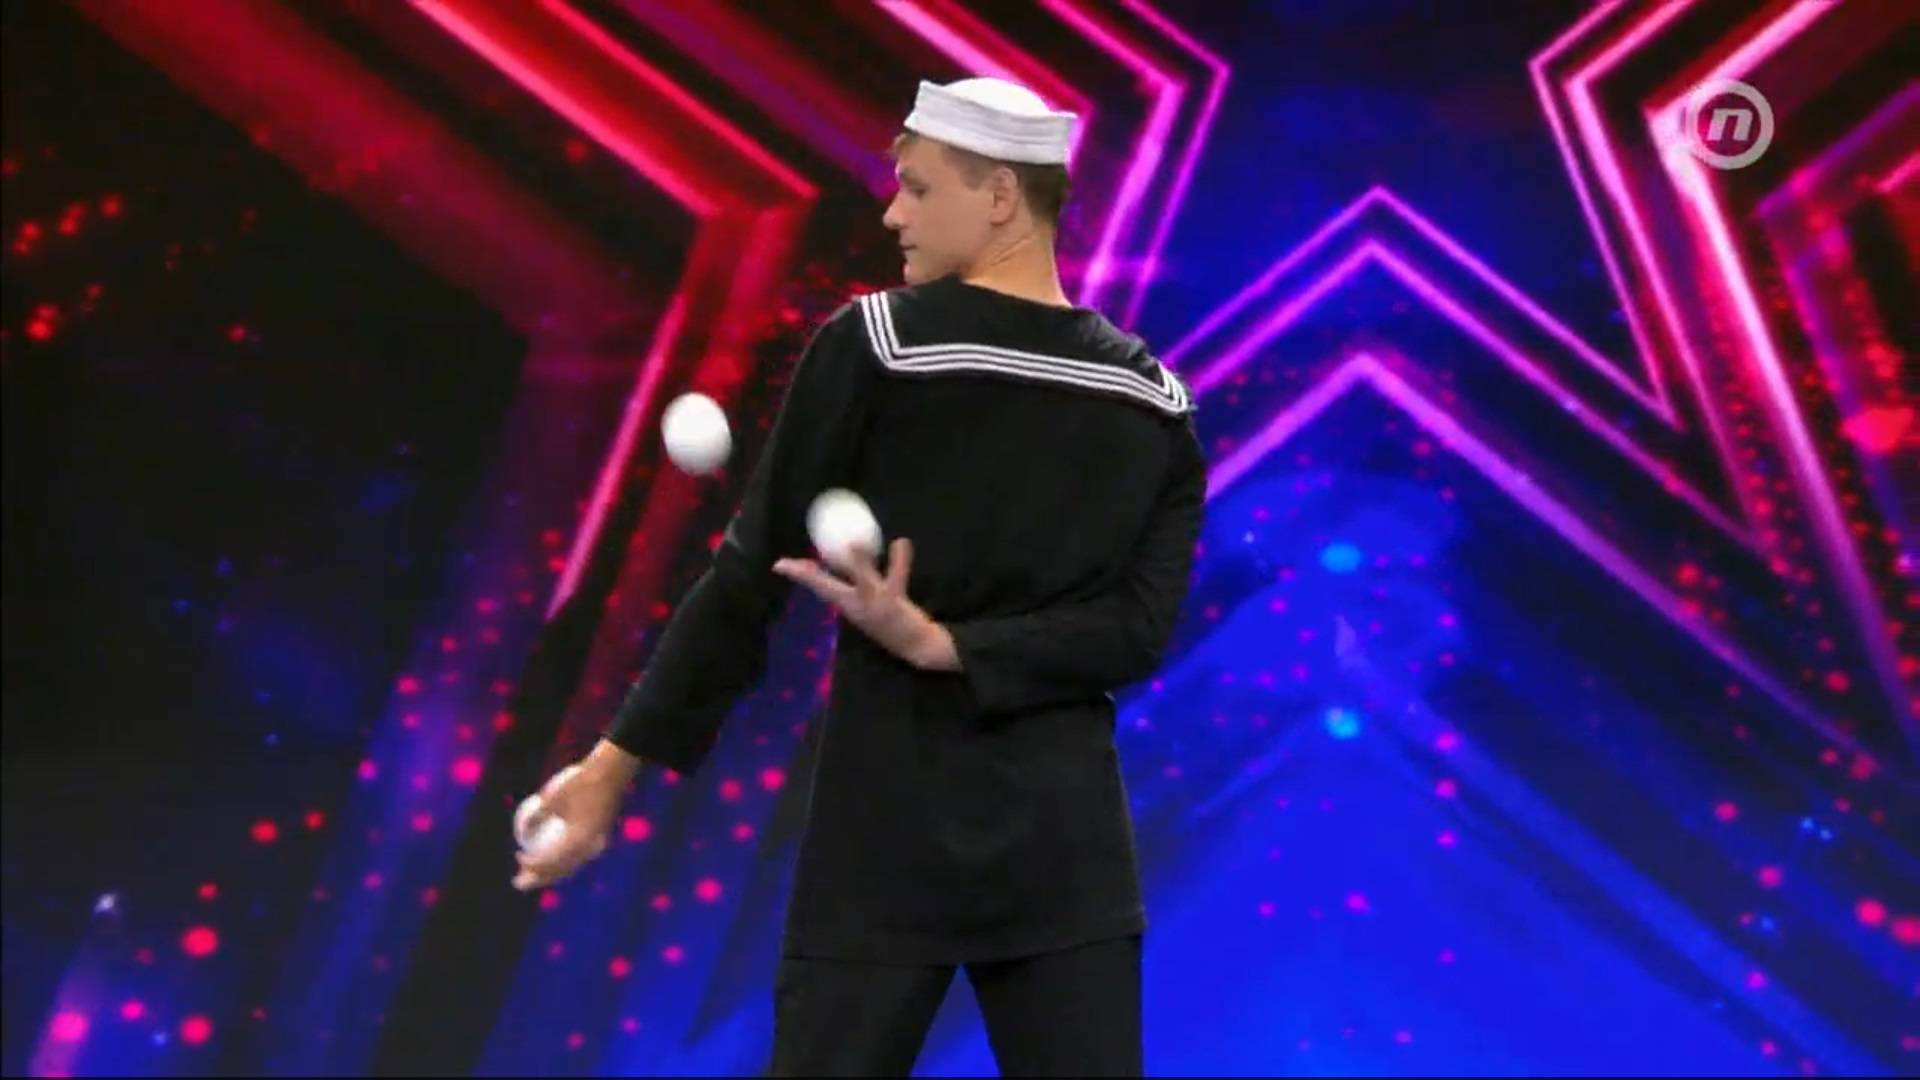 Braća rasplesala publiku na harmonici, a Ukrajinac oduševio žongliranjem deset loptica